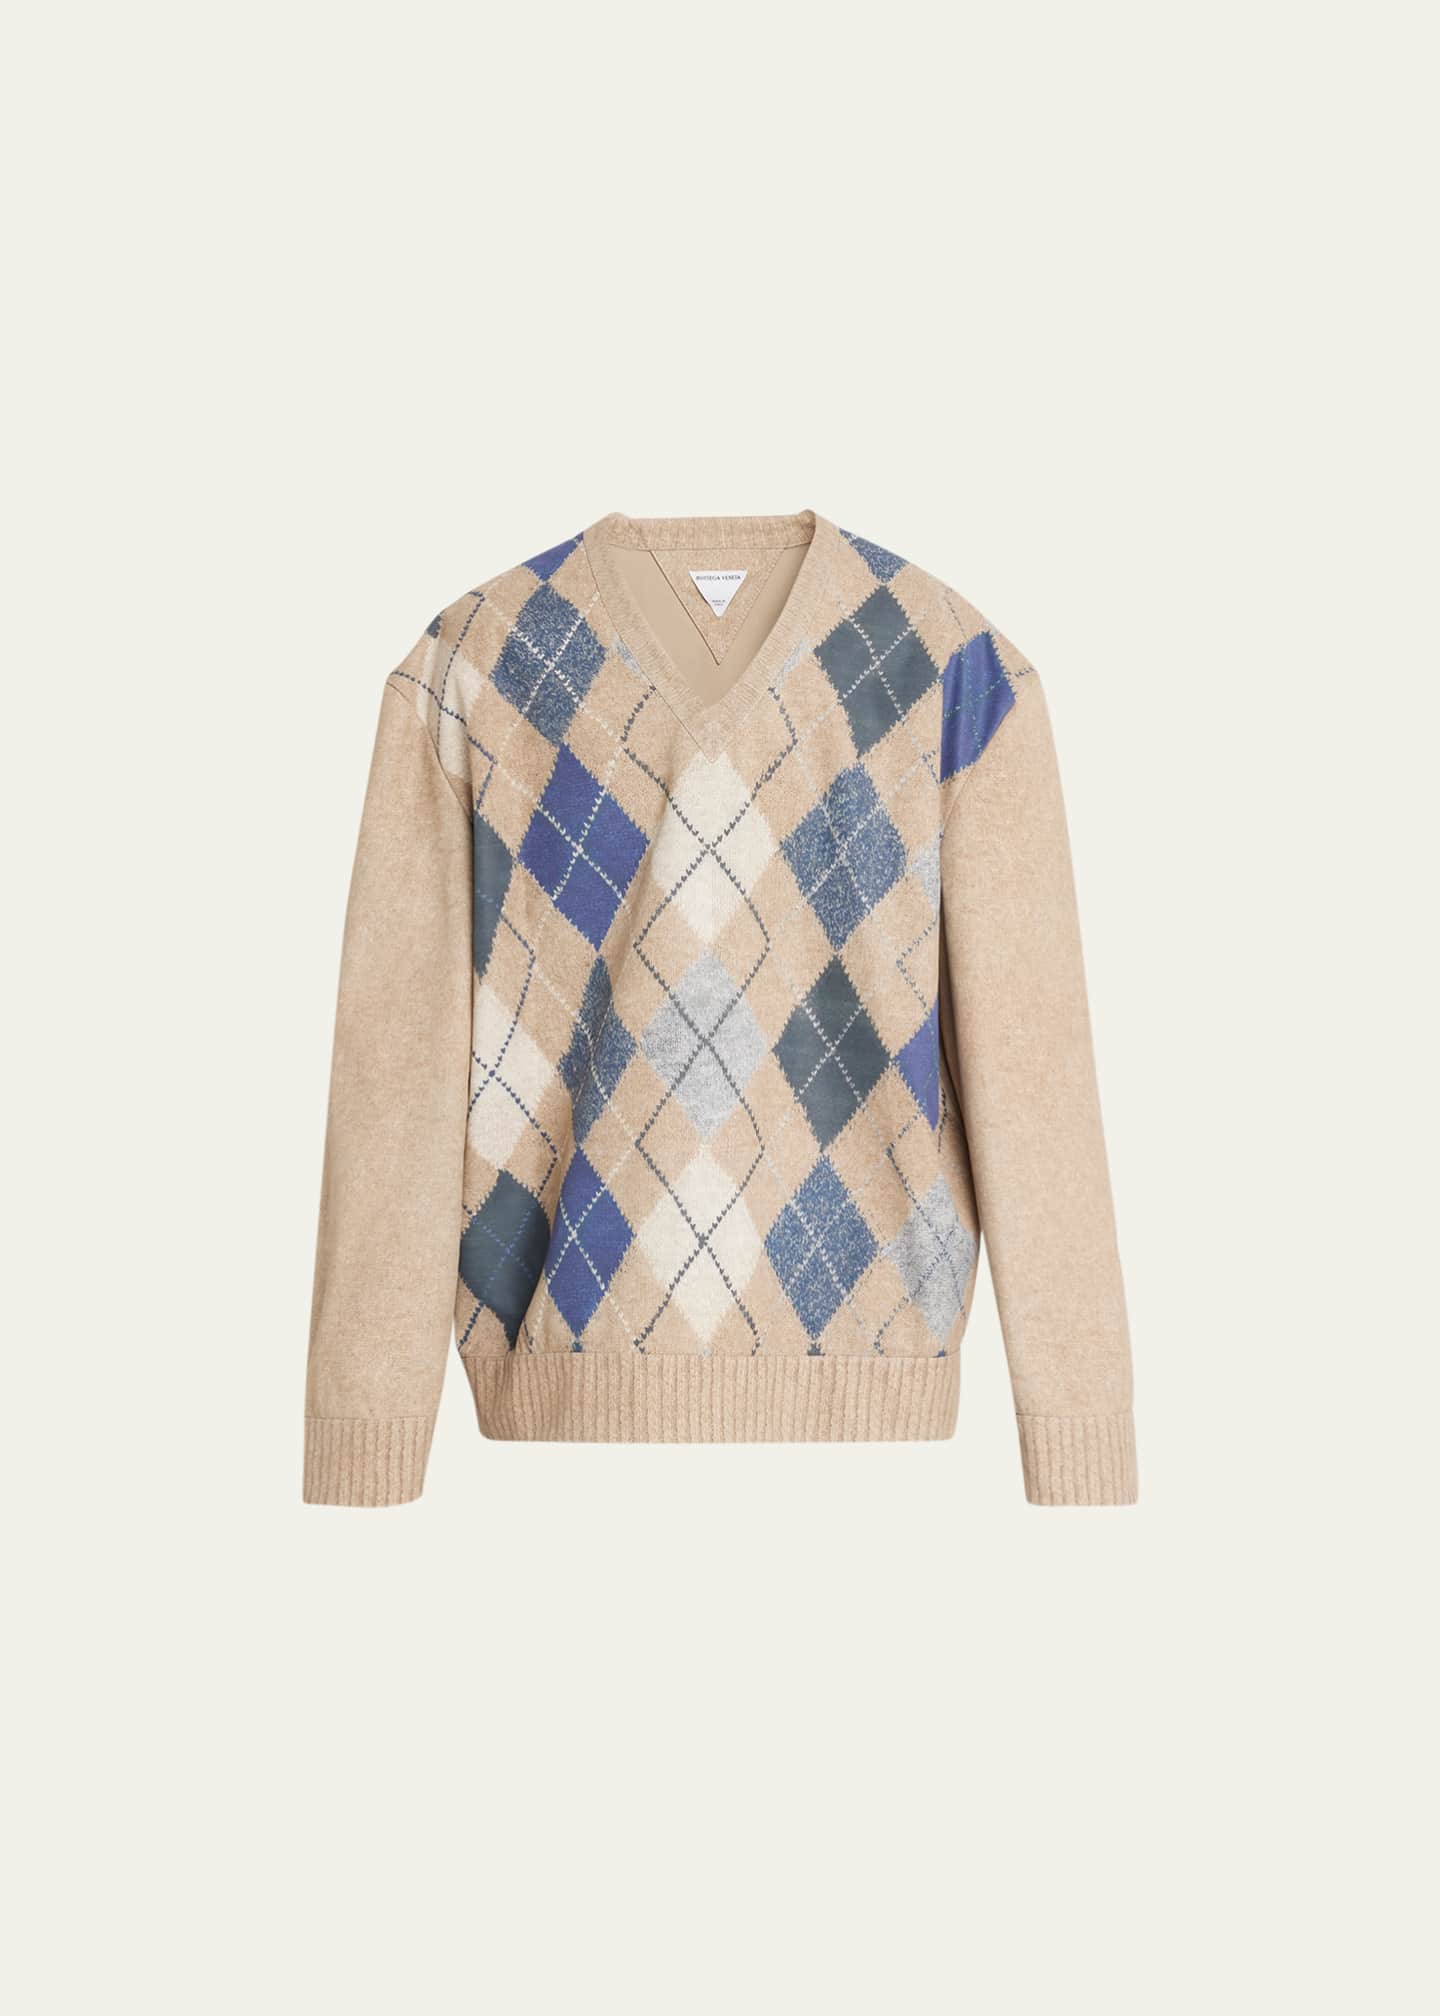 Bottega Veneta Men's Argyle Print Leather Sweater - Bergdorf Goodman